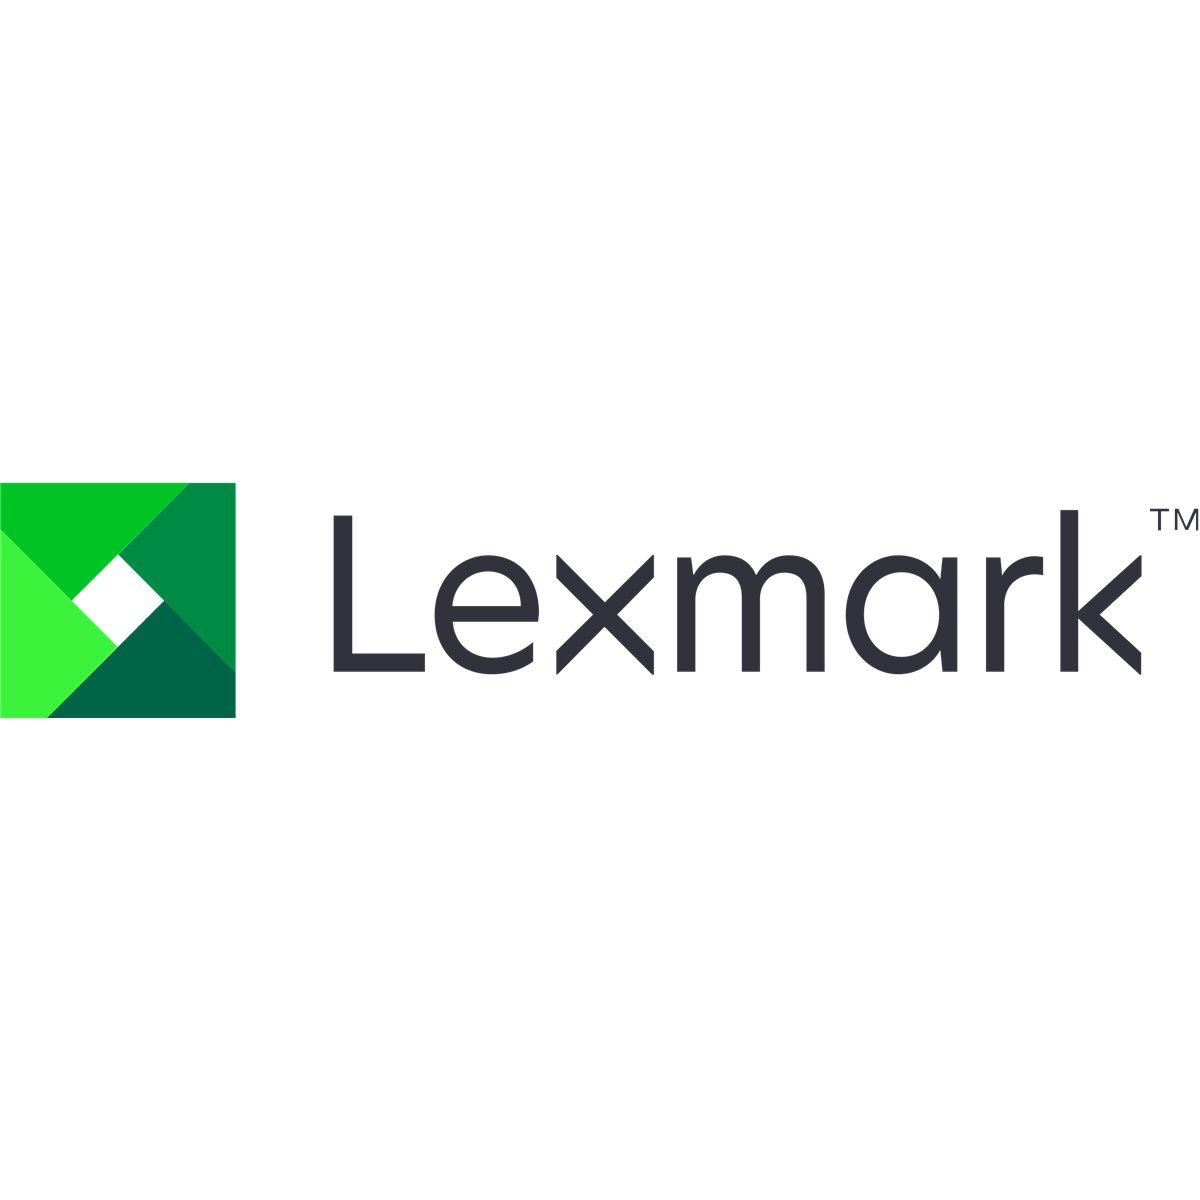 Lexmark CX730de A4 MFP Color Laser 40ppm - Laser-Led - Colored